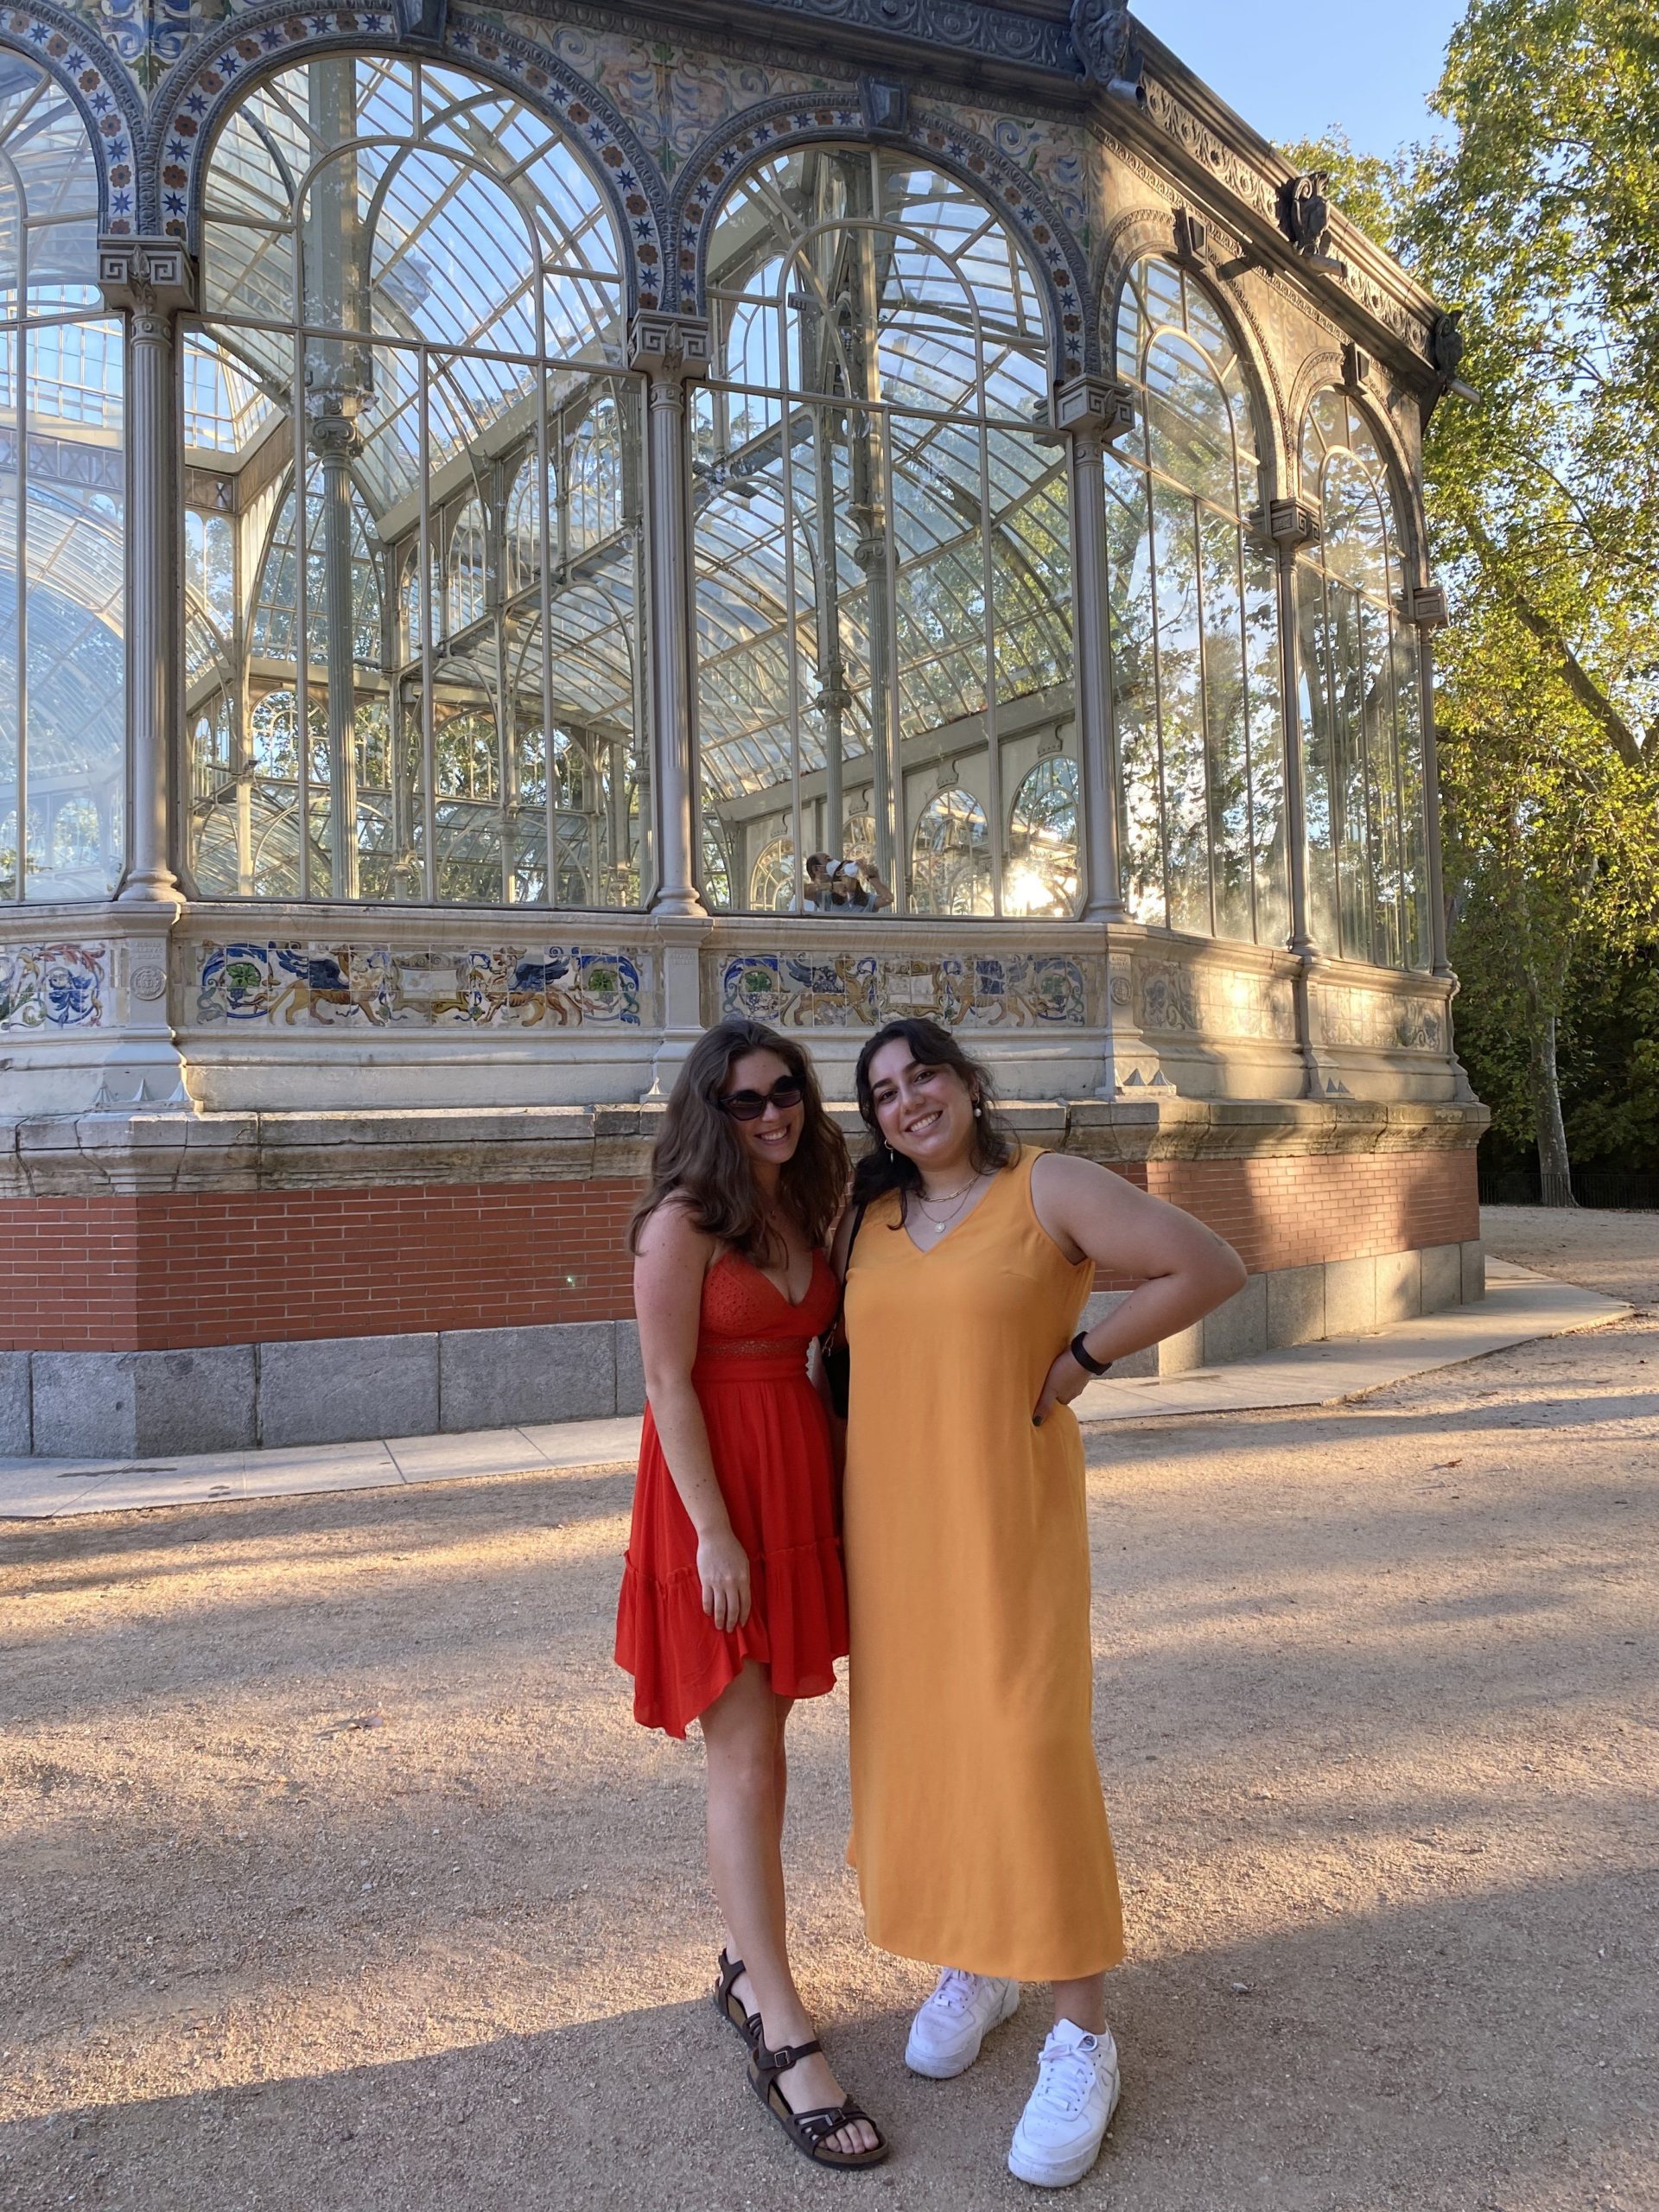 The author and a friend at the Palacio de Cristal in Parque del Retiro.